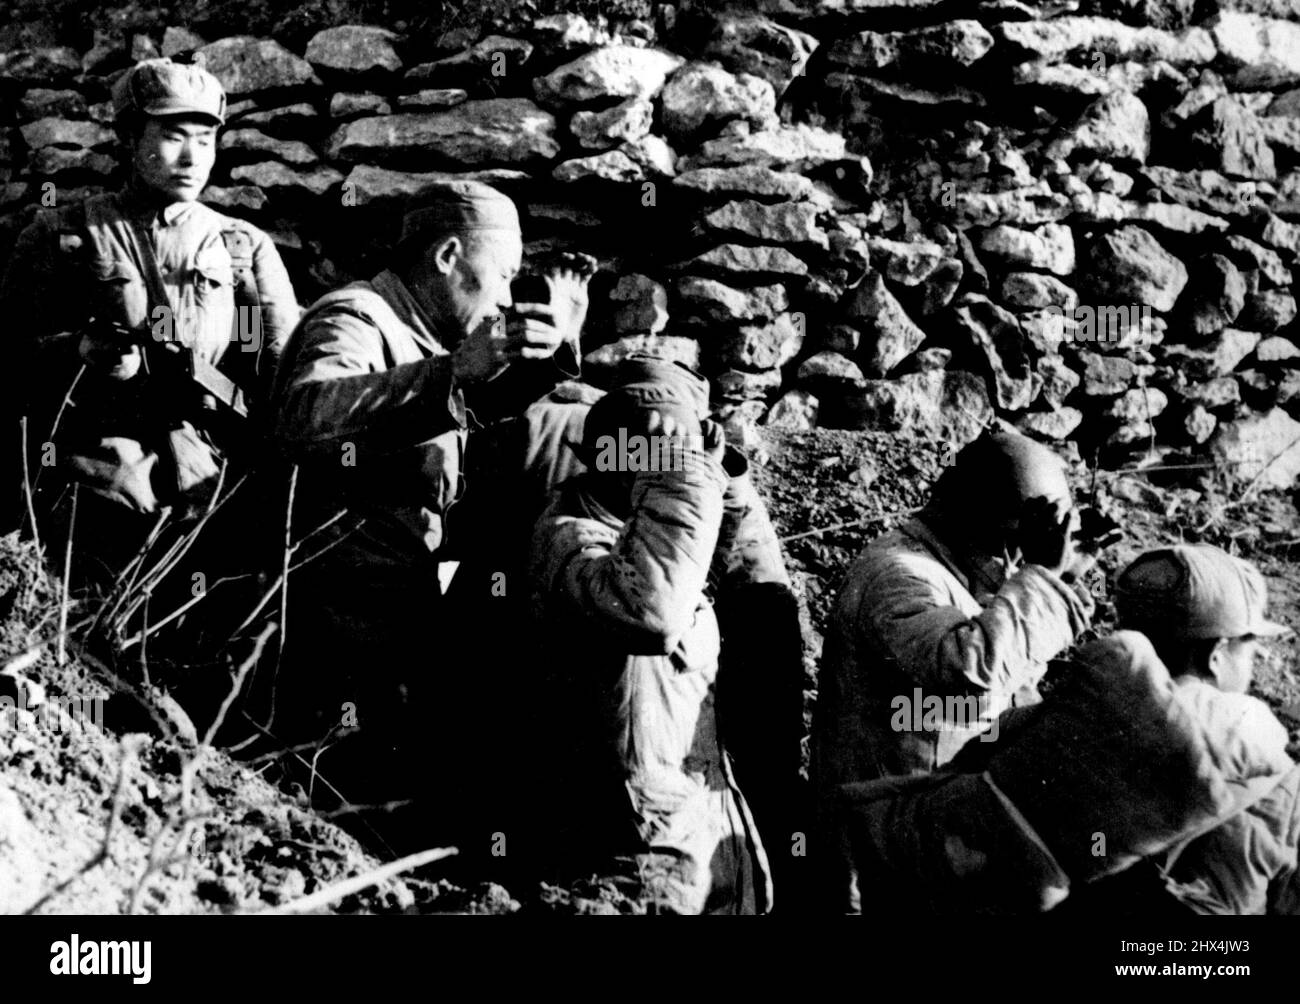 Gefangennahme von Yi Kiang Shan - die Truppen der chinesischen „Befreiungsarmee“ stürmten und eroberten die nationalistisch gehaltene Insel Yi Kiang Shan, eine der Tachen-Gruppe, am 18. Januar bei einem plötzlichen Angriff, der von Marine- und Luftstreitkräften unterstützt wurde. Laut kommunistischen Quellen in Peiping ließen diese nationalistischen Soldaten einen ihrer Bunker, nachdem die Insel kapituliert hatte. Ein chinesischer kommunistischer Soldat bedeckt sie mit der Pistole. 23. März 1955. Stockfoto